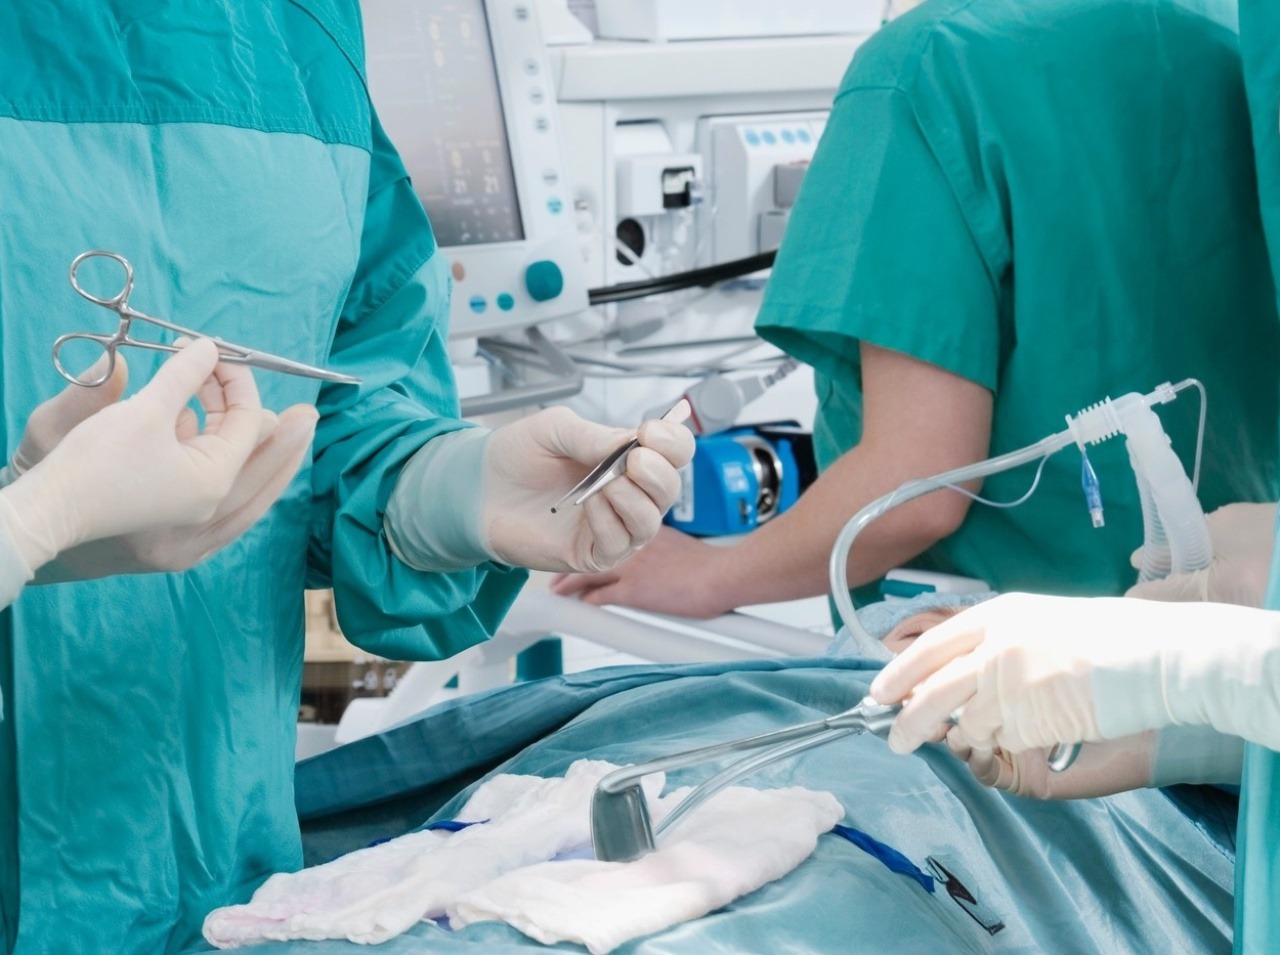 Slovenskí pacienti majú medzi prvými na svete pod kožou mini EKG monitor. (Ilustračná fotografia)